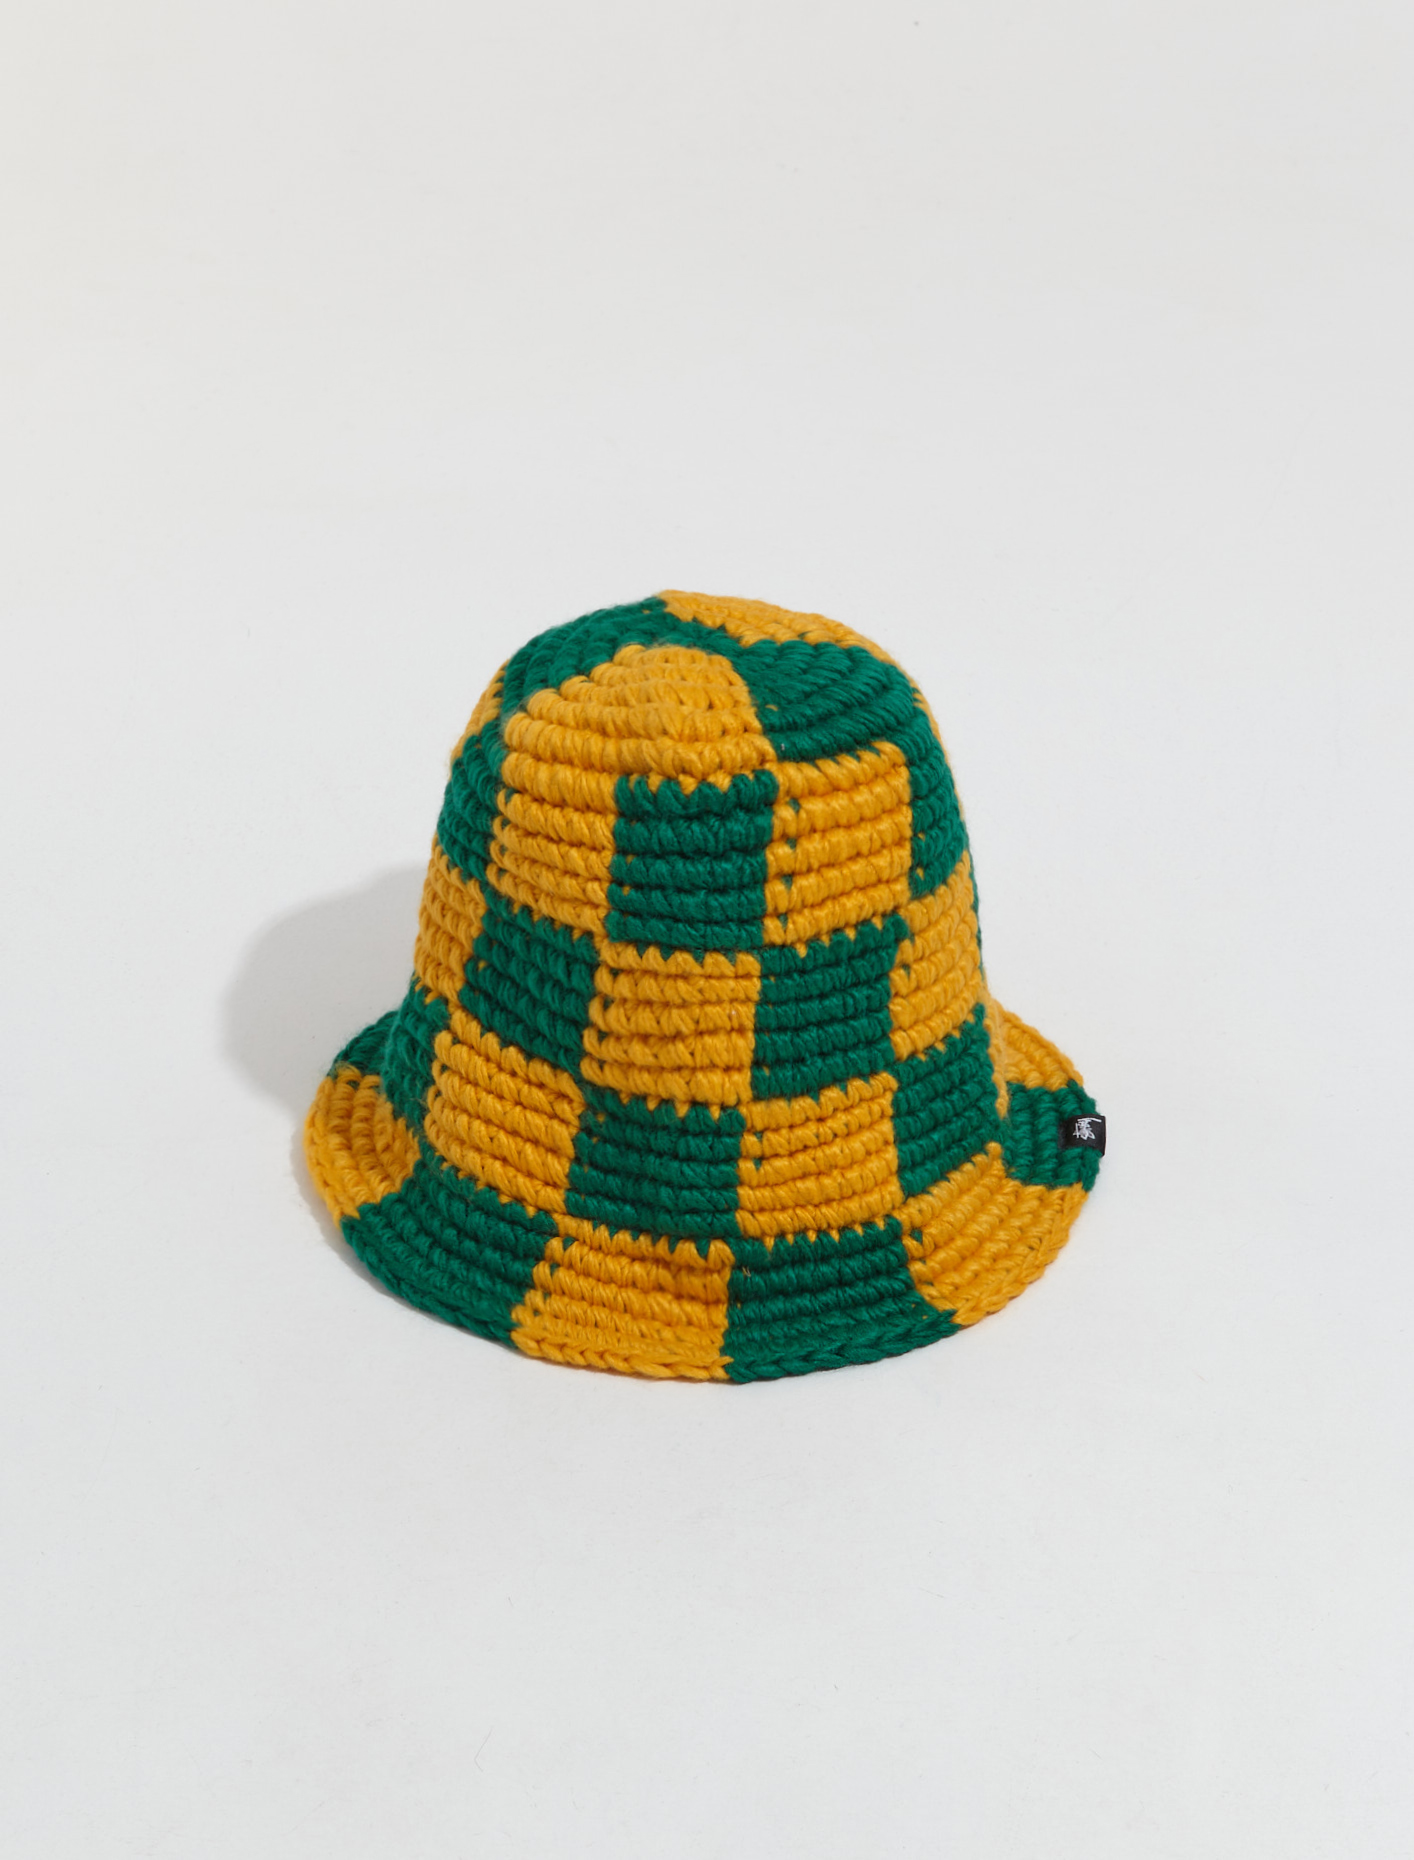 Stüssy Checker Knit Bucket Hat in Evergreen | Voo Store Berlin